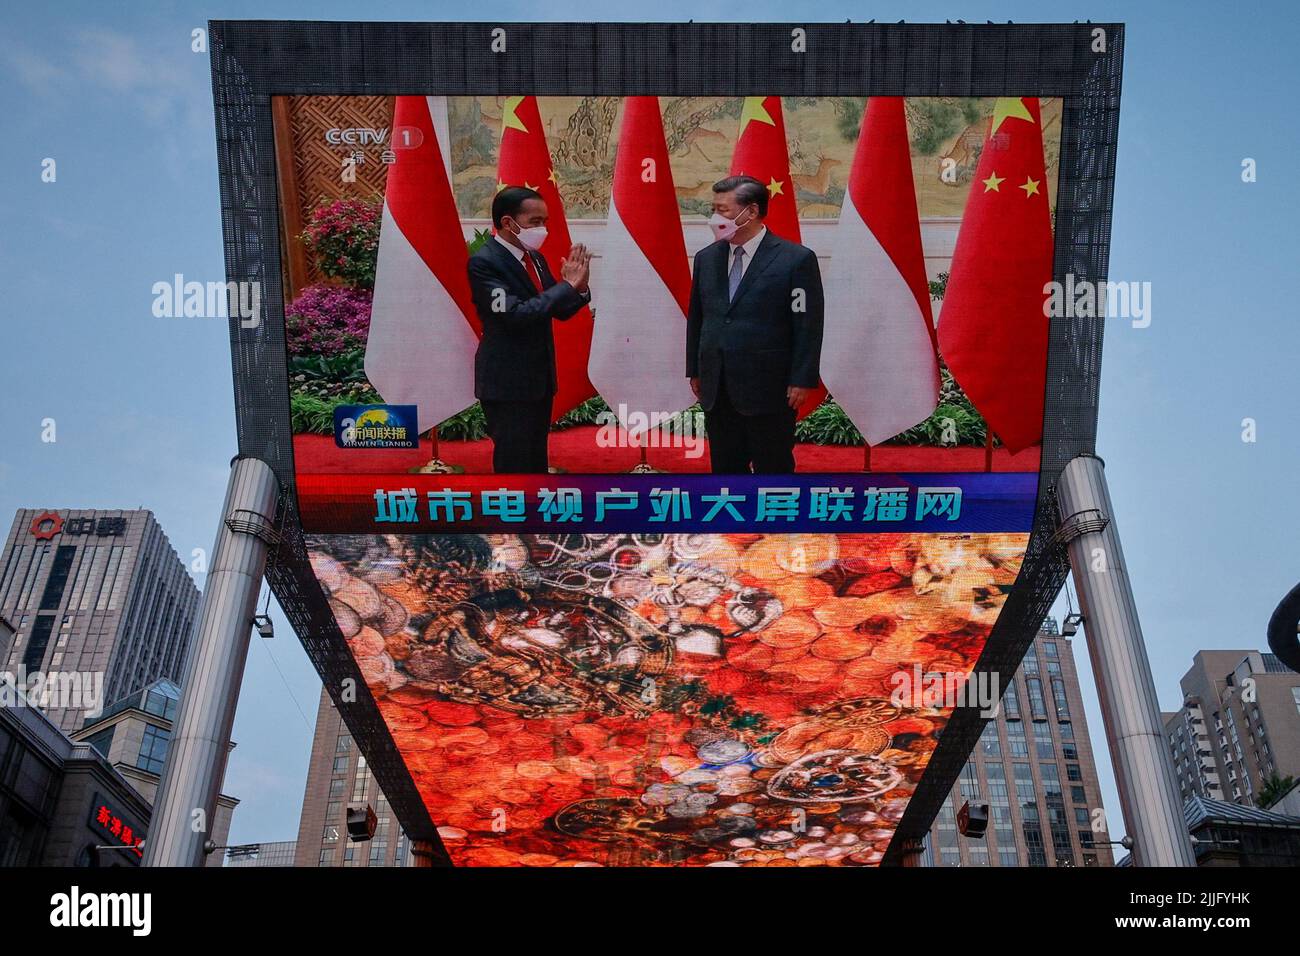 Una schermata mostra una trasmissione di media dello stato CCTV del presidente cinese Xi Jinping riunione del presidente indonesiano Joko Widodo in un centro commerciale a Pechino, Cina, 26 luglio 2022. REUTERS/Thomas Peter Foto Stock